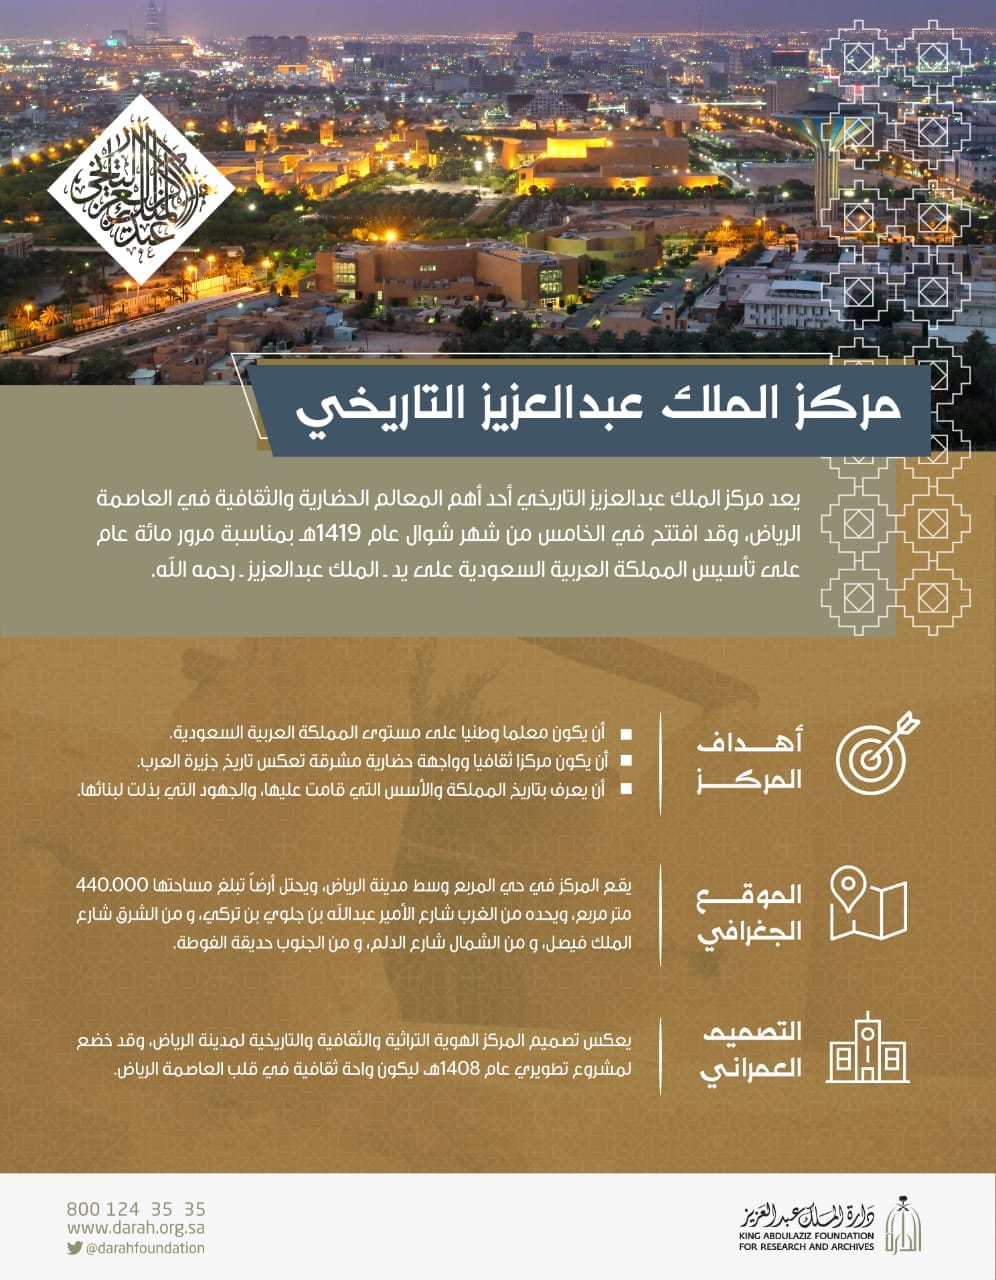 دارة الملك عبدالعزيز On Twitter انفوجرافيك الدارة مركز الملك عبد العزيز التاريخي في سطور